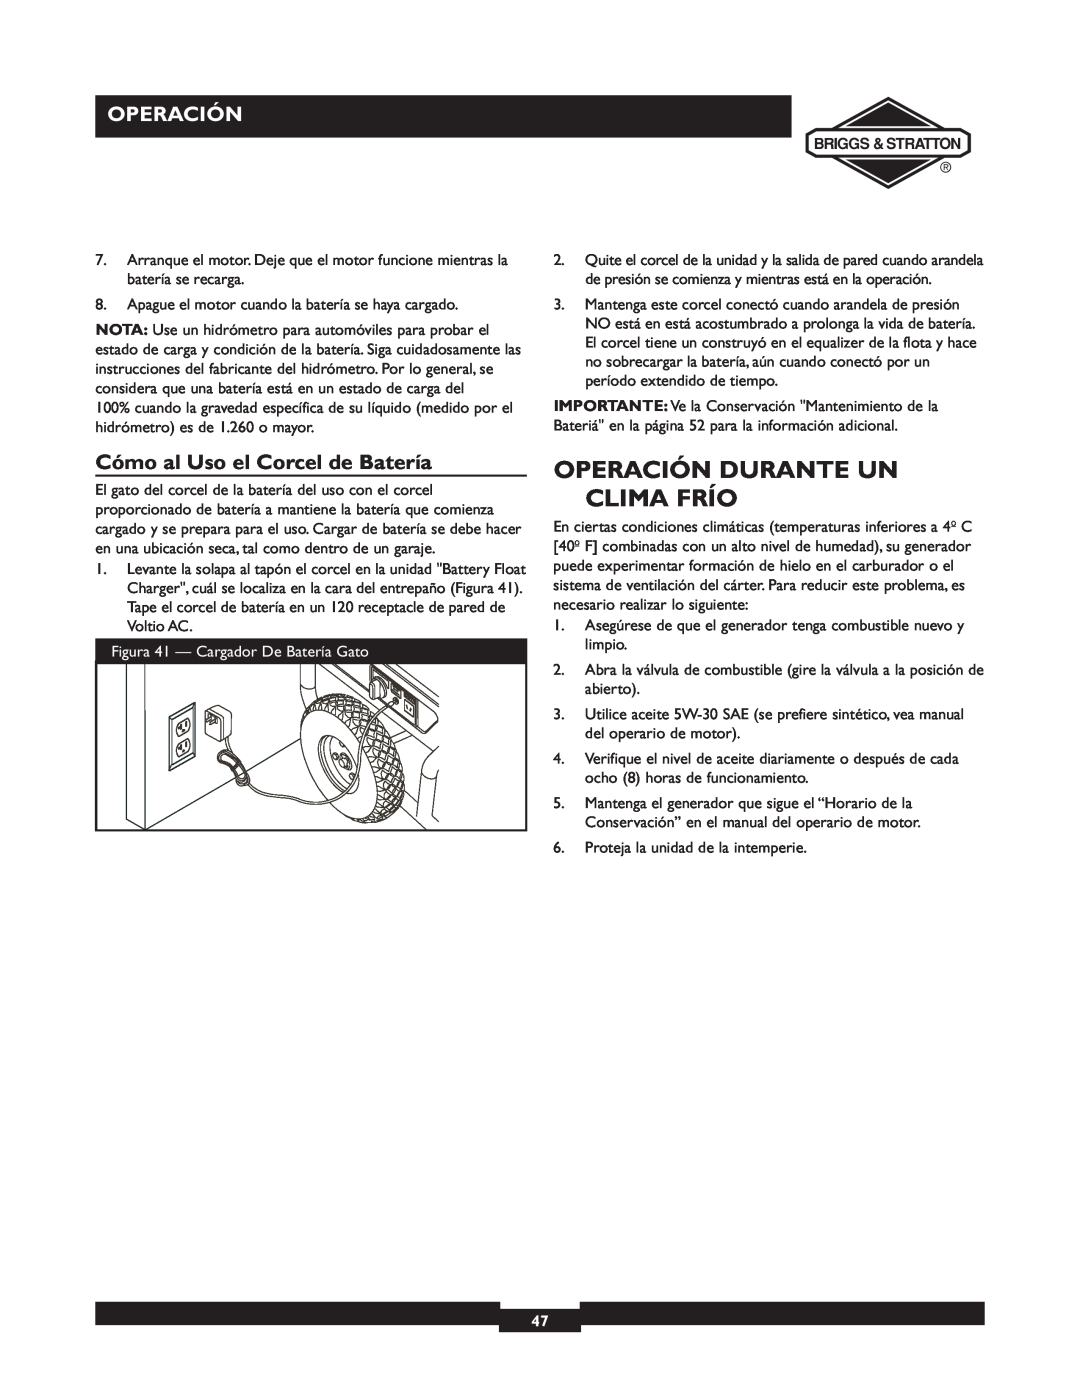 Briggs & Stratton 01894-1 manual Operación Durante Un, Clima Frío, Cómo al Uso el Corcel de Batería 